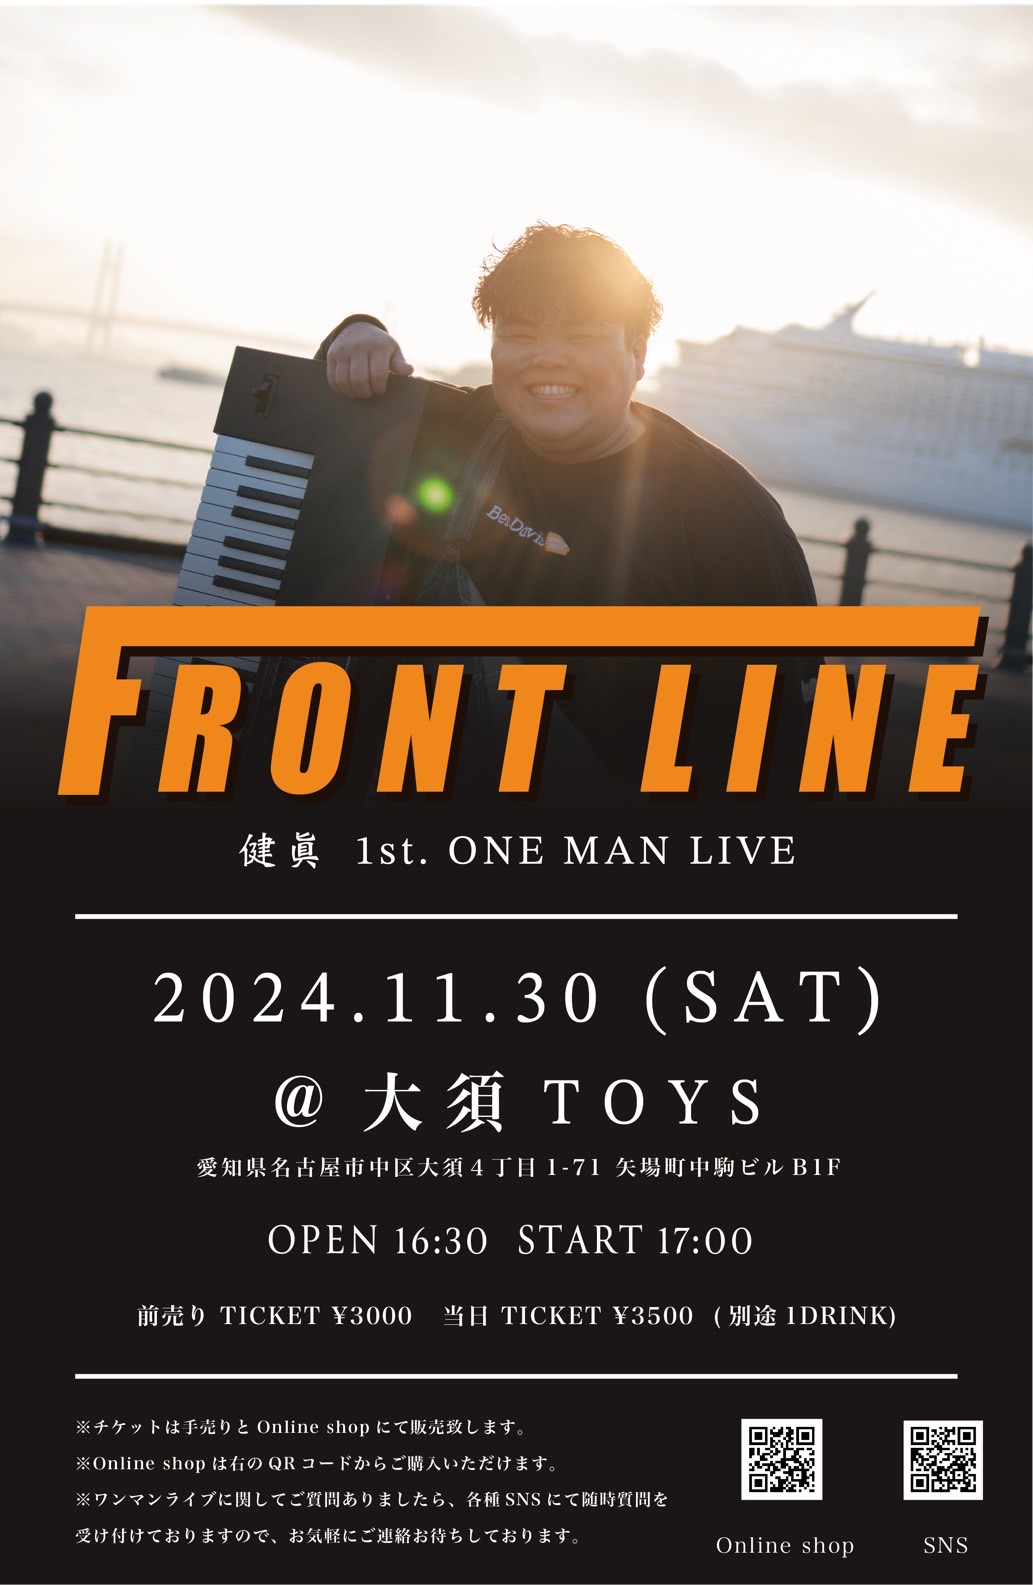 FLONT LINE 健眞 1st.ONE MAN LIVE